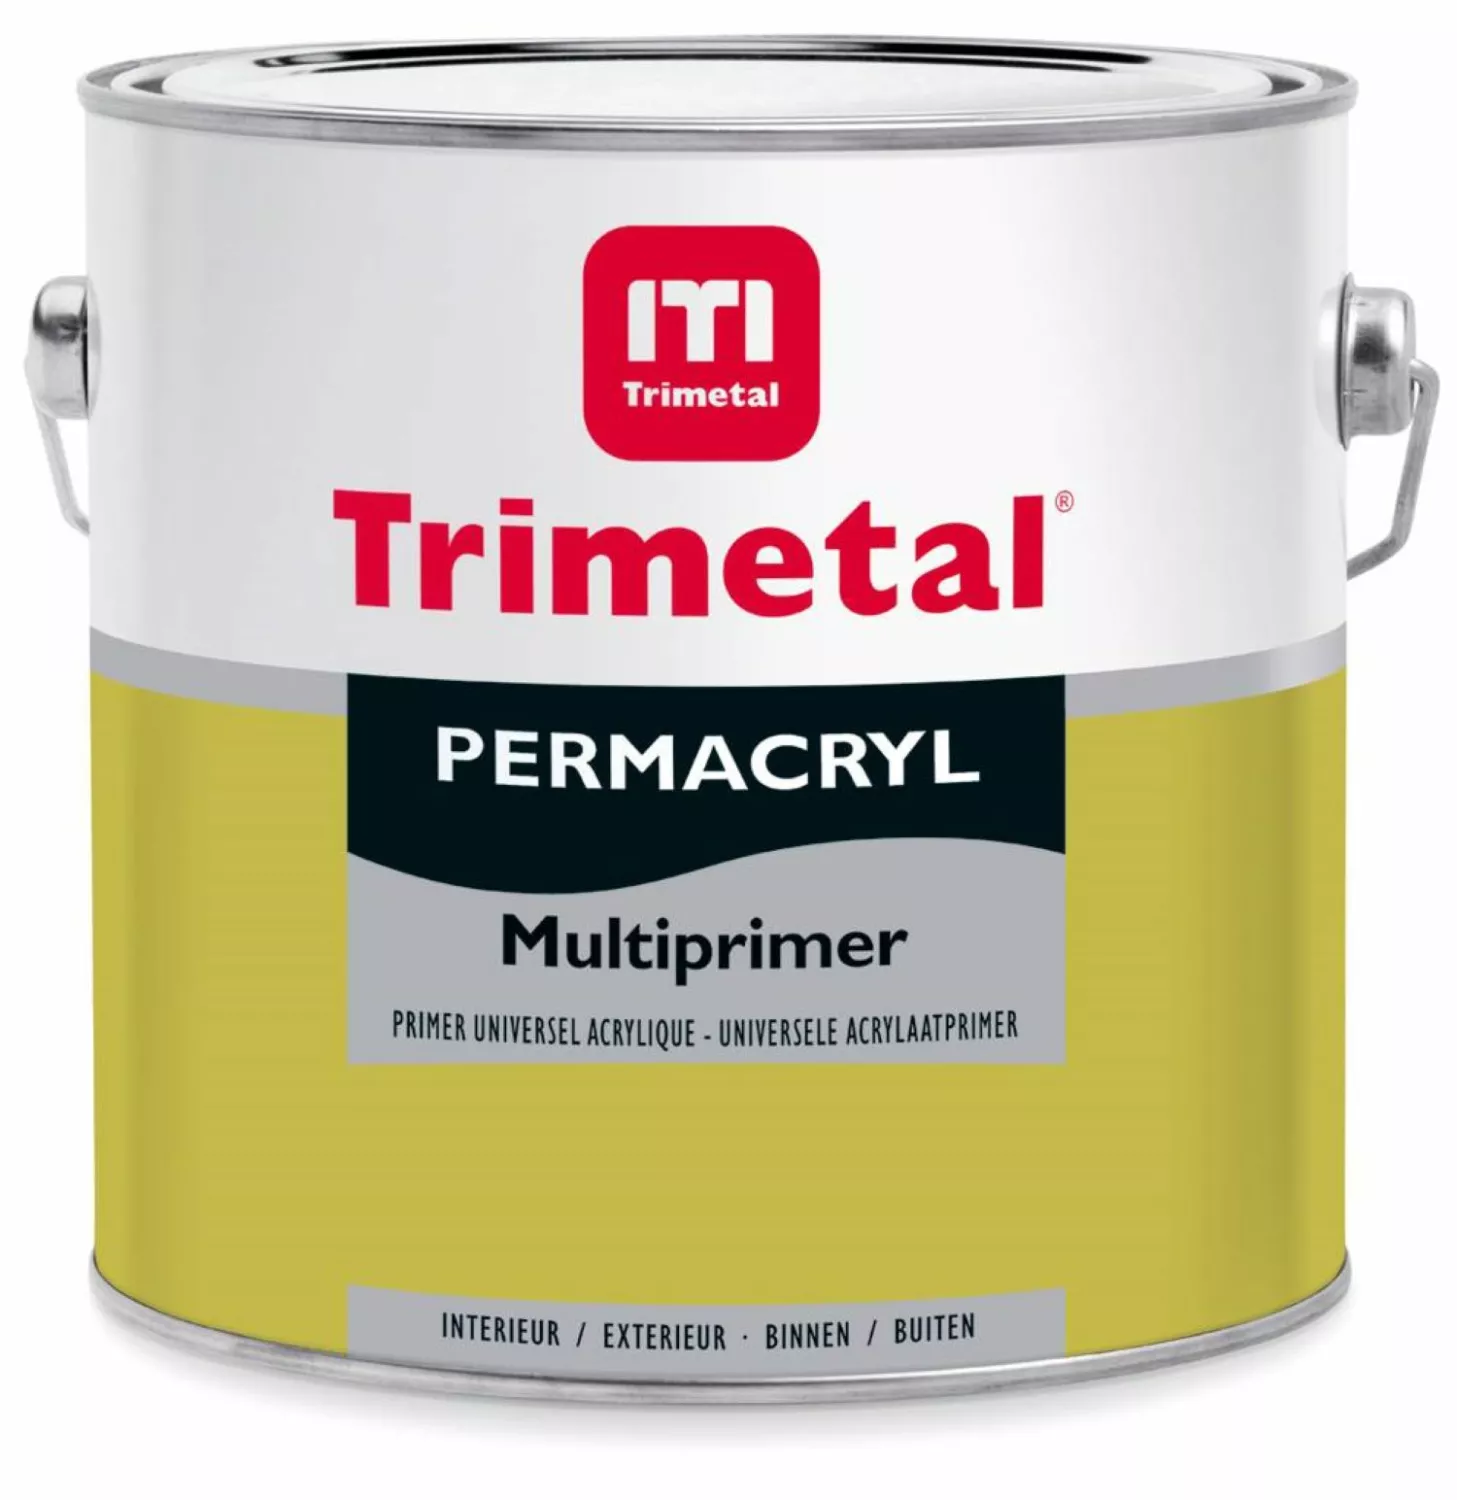 Trimetal Permacryl Multiprimer grondverf - op kleur gemengd - 2,5L-image